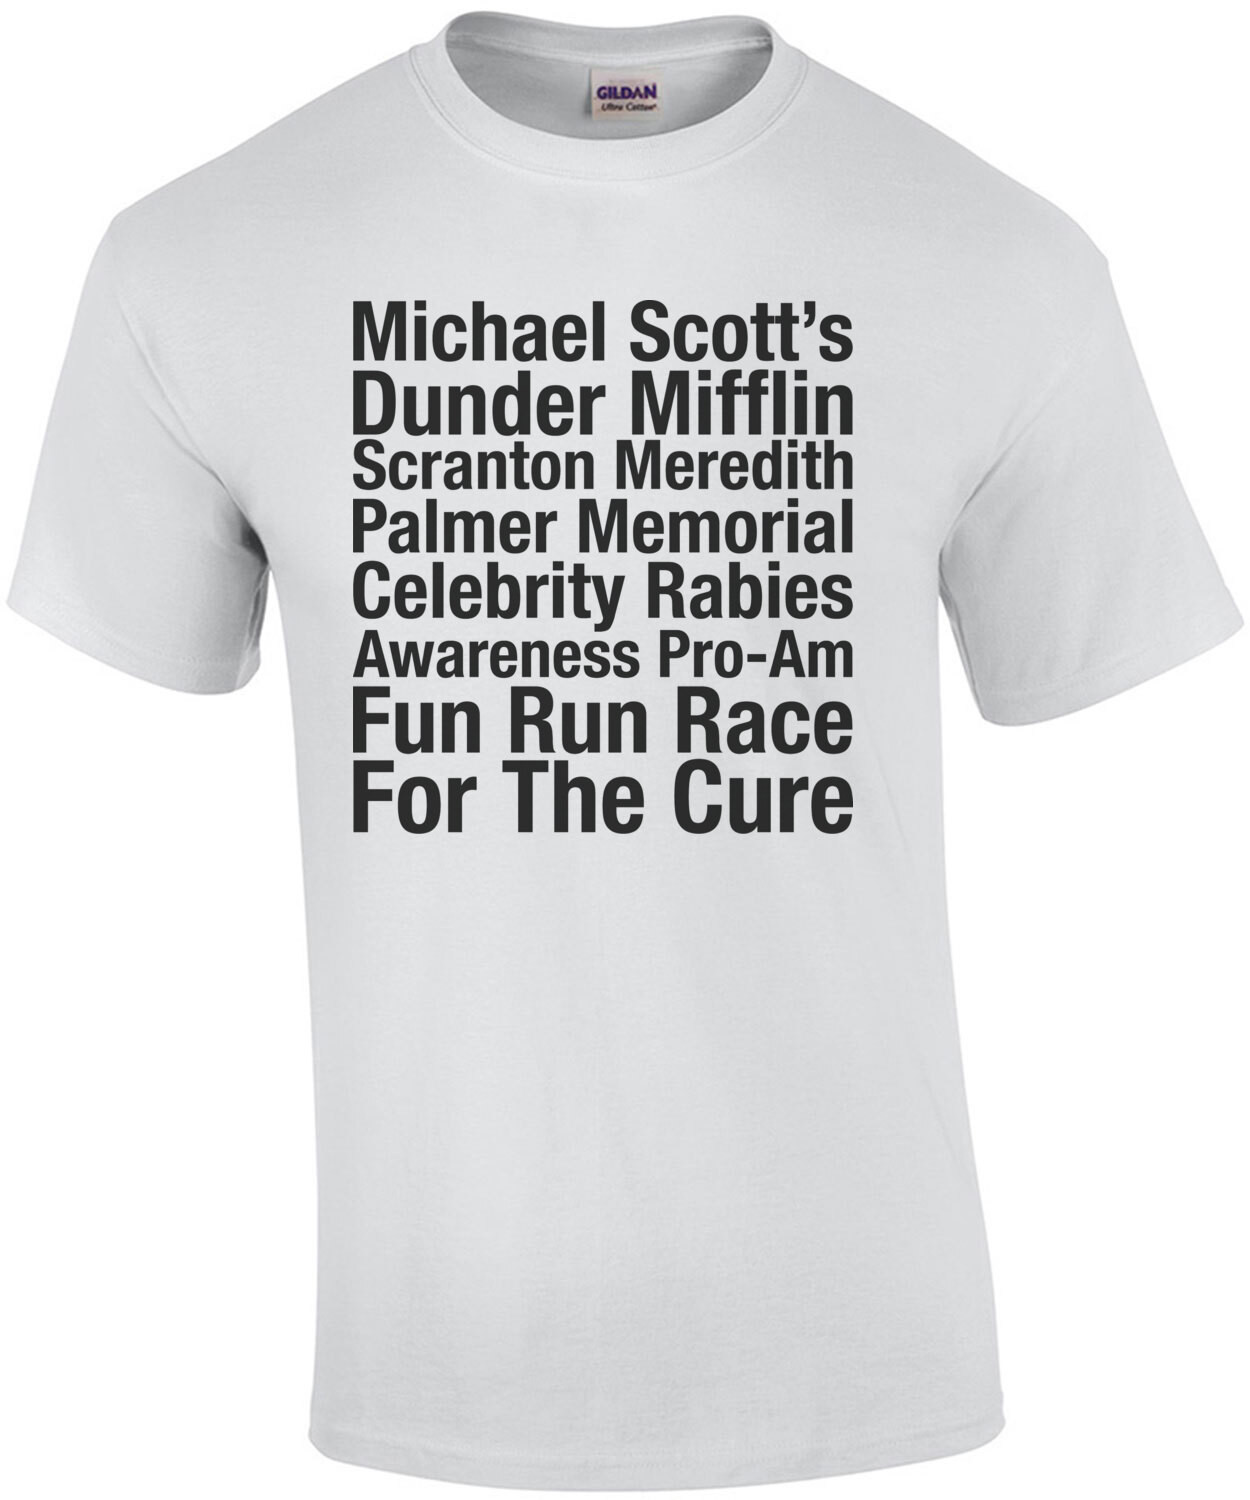 Michael Scott's Dunder Mifflin Celebrity Rabies Awareness Fun Run For The Cure The Office Shirt